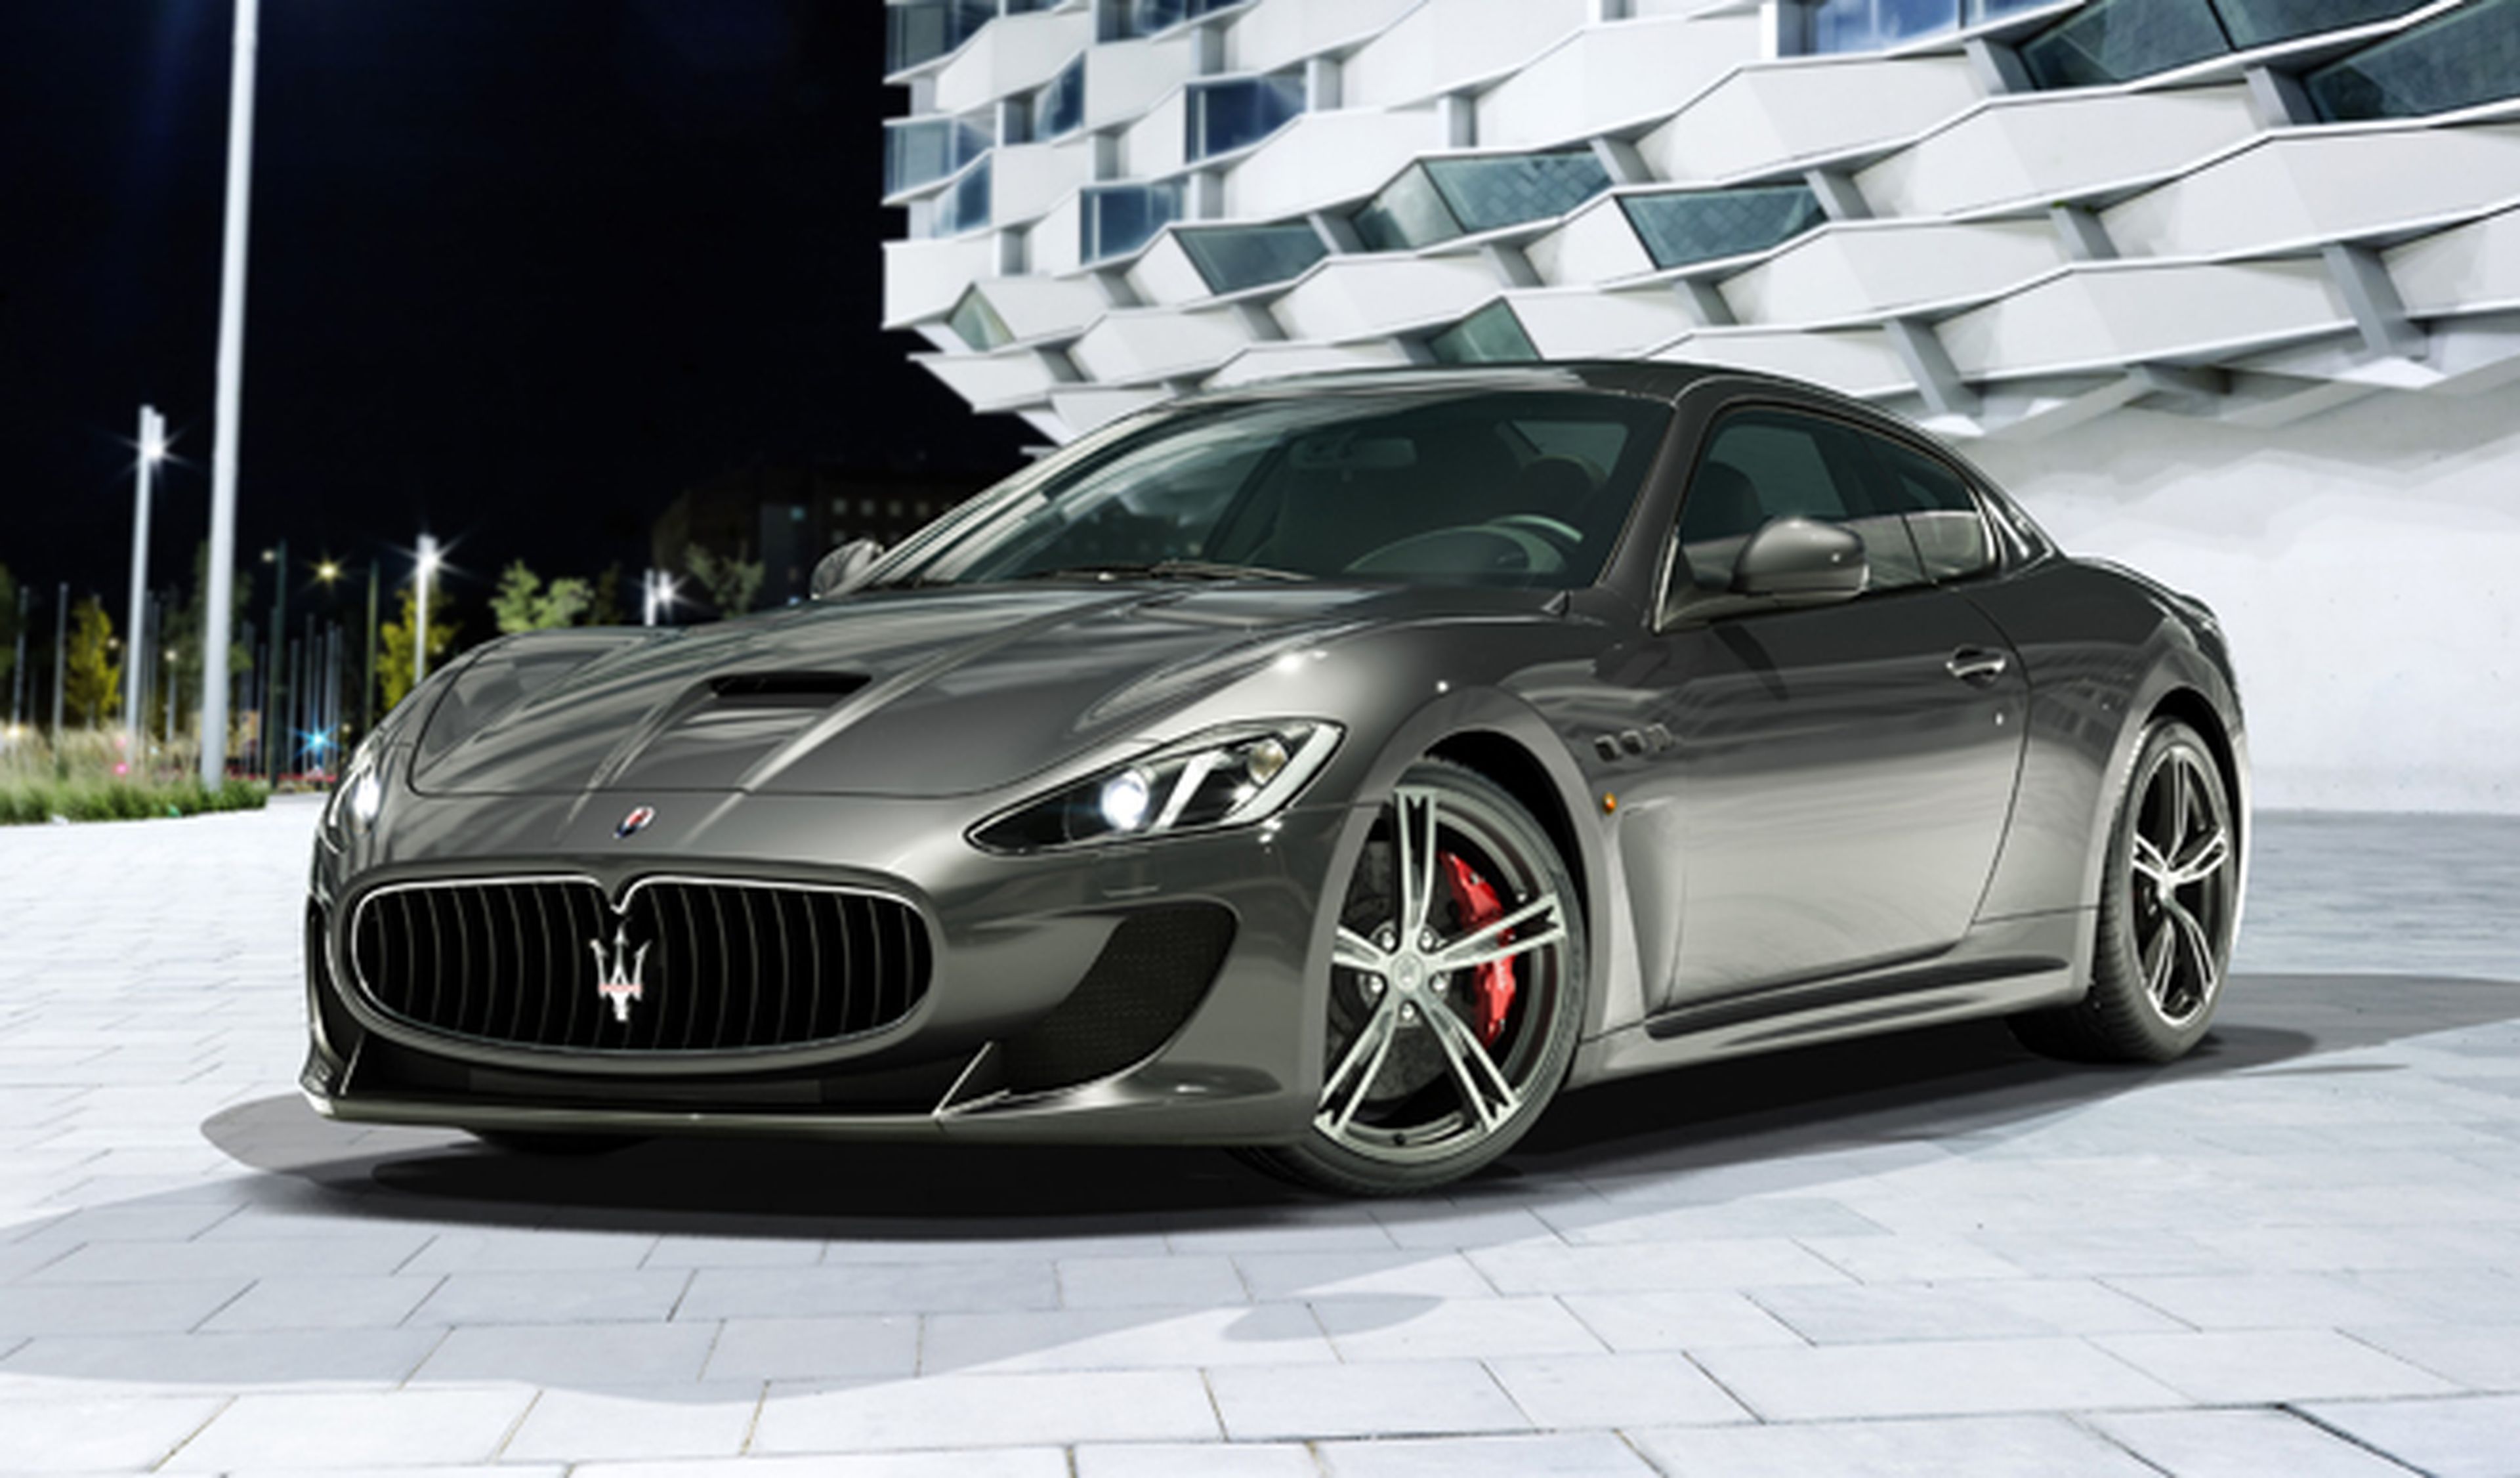 Llamada a revisión de Maserati por... ¿puertas voladoras?